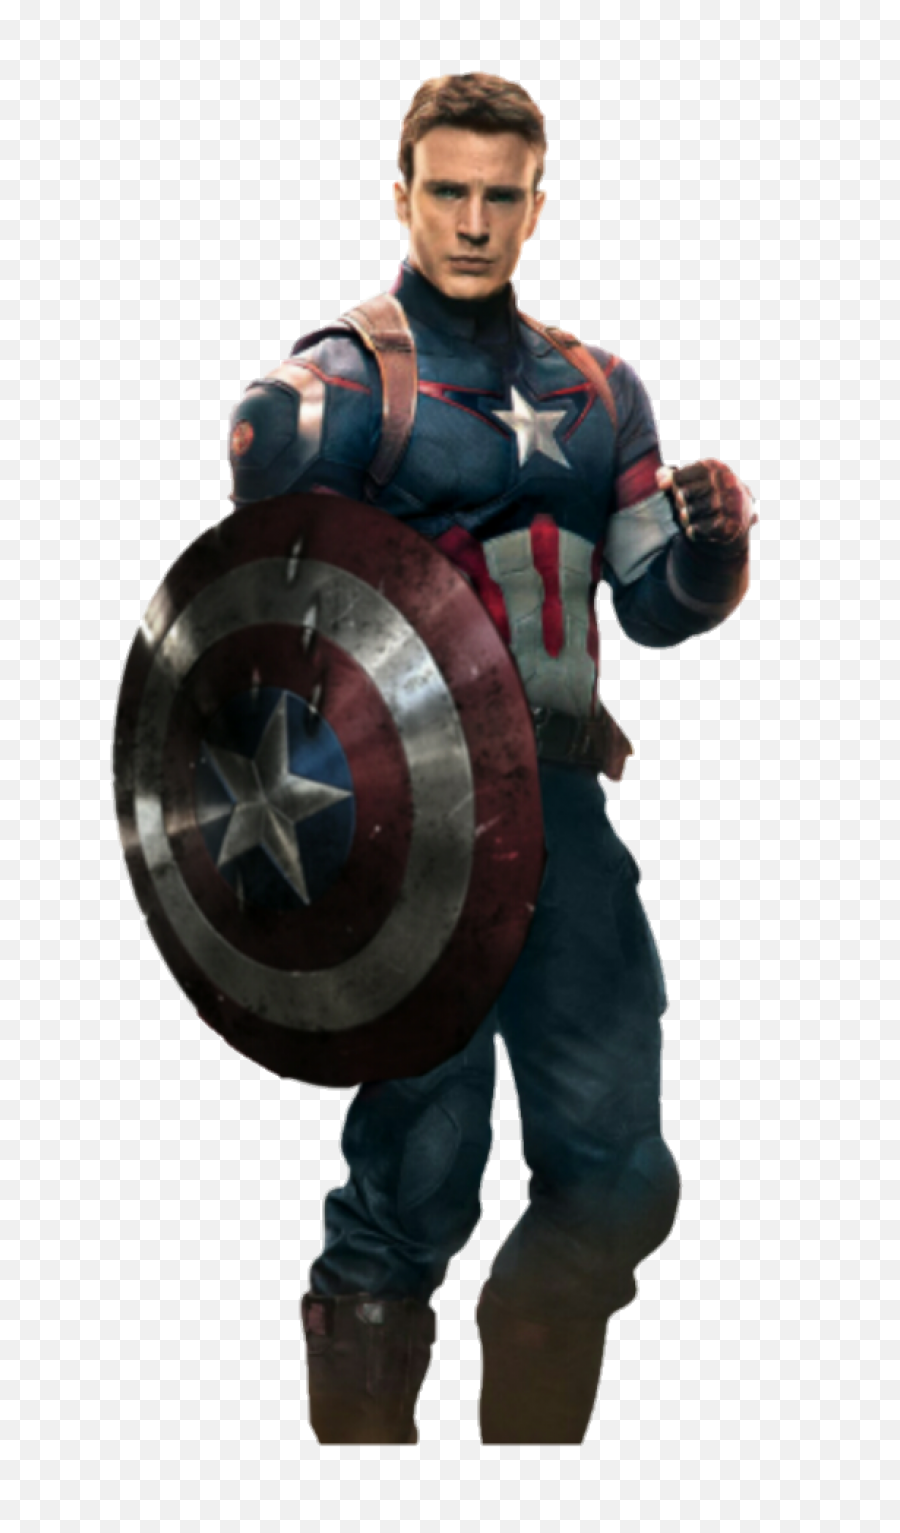 Captain America Png Transparent - Captain America Png Transparent,Captain America Transparent Background